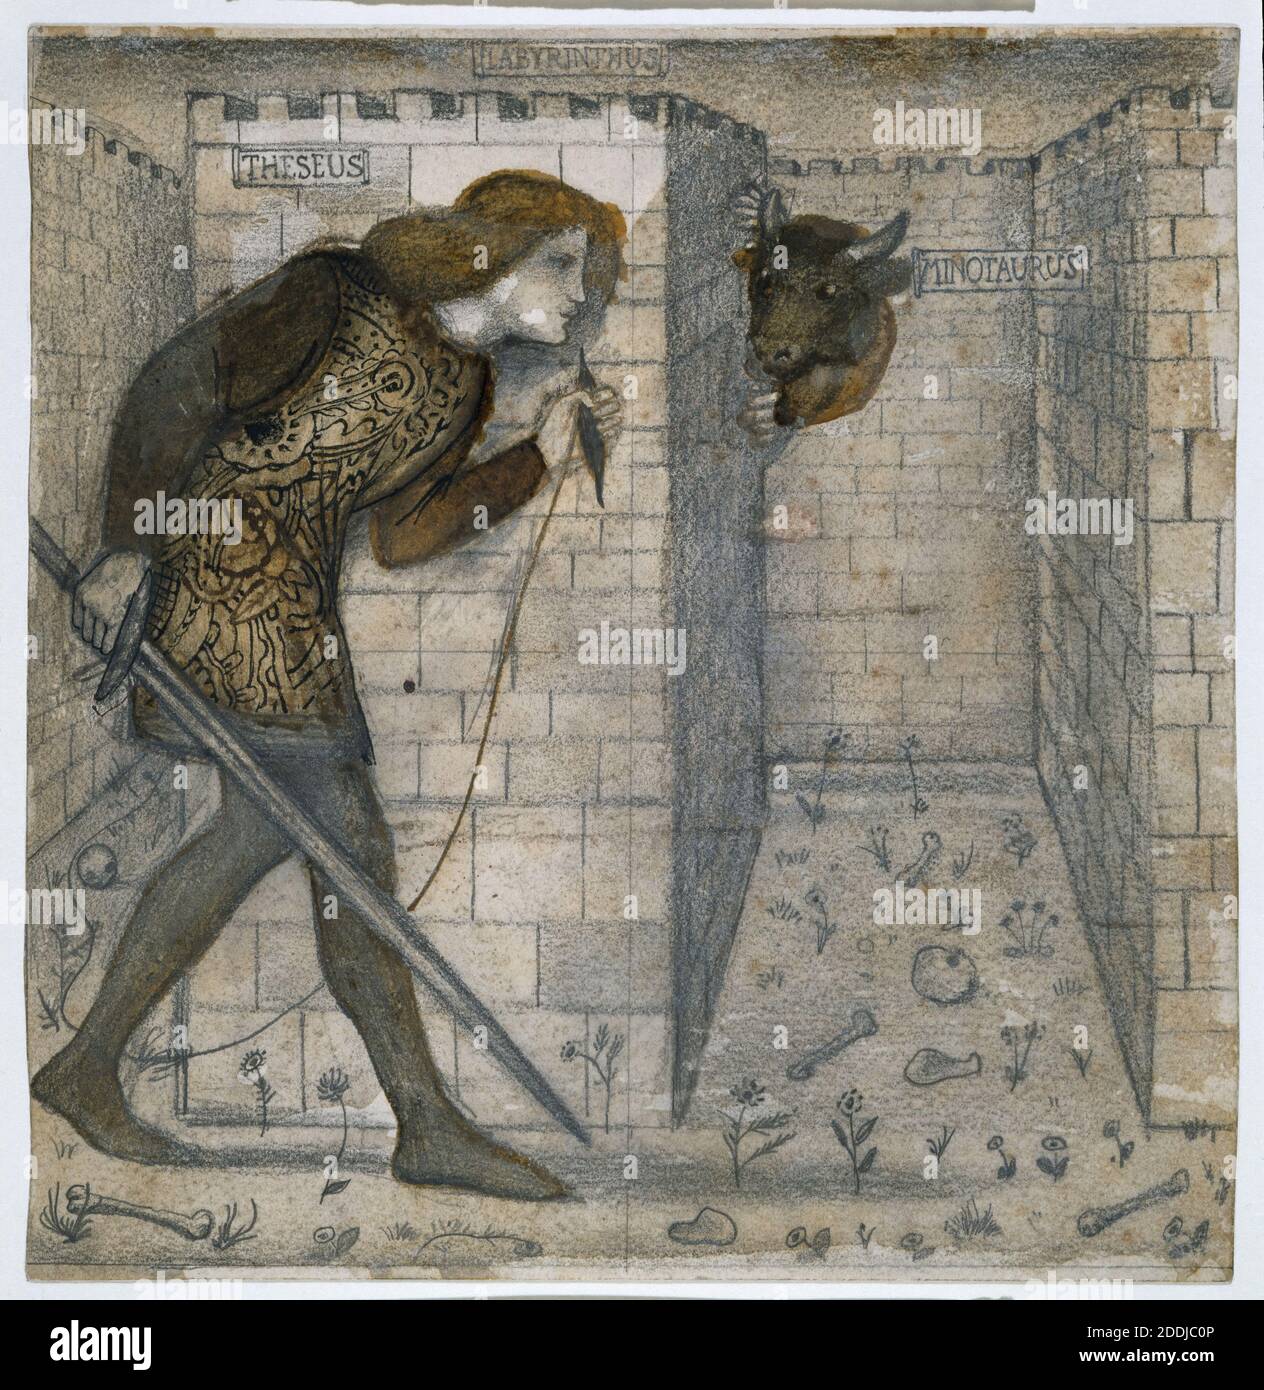 Conception de carreaux, Theseus et le Minotaure dans le labyrinthe, 1861 par Sir Edward Burne-Jones, mythologie grecque, dessin, crayon, pré-Raphaelite, Parabola Japon, dessin de lavage, étude Banque D'Images